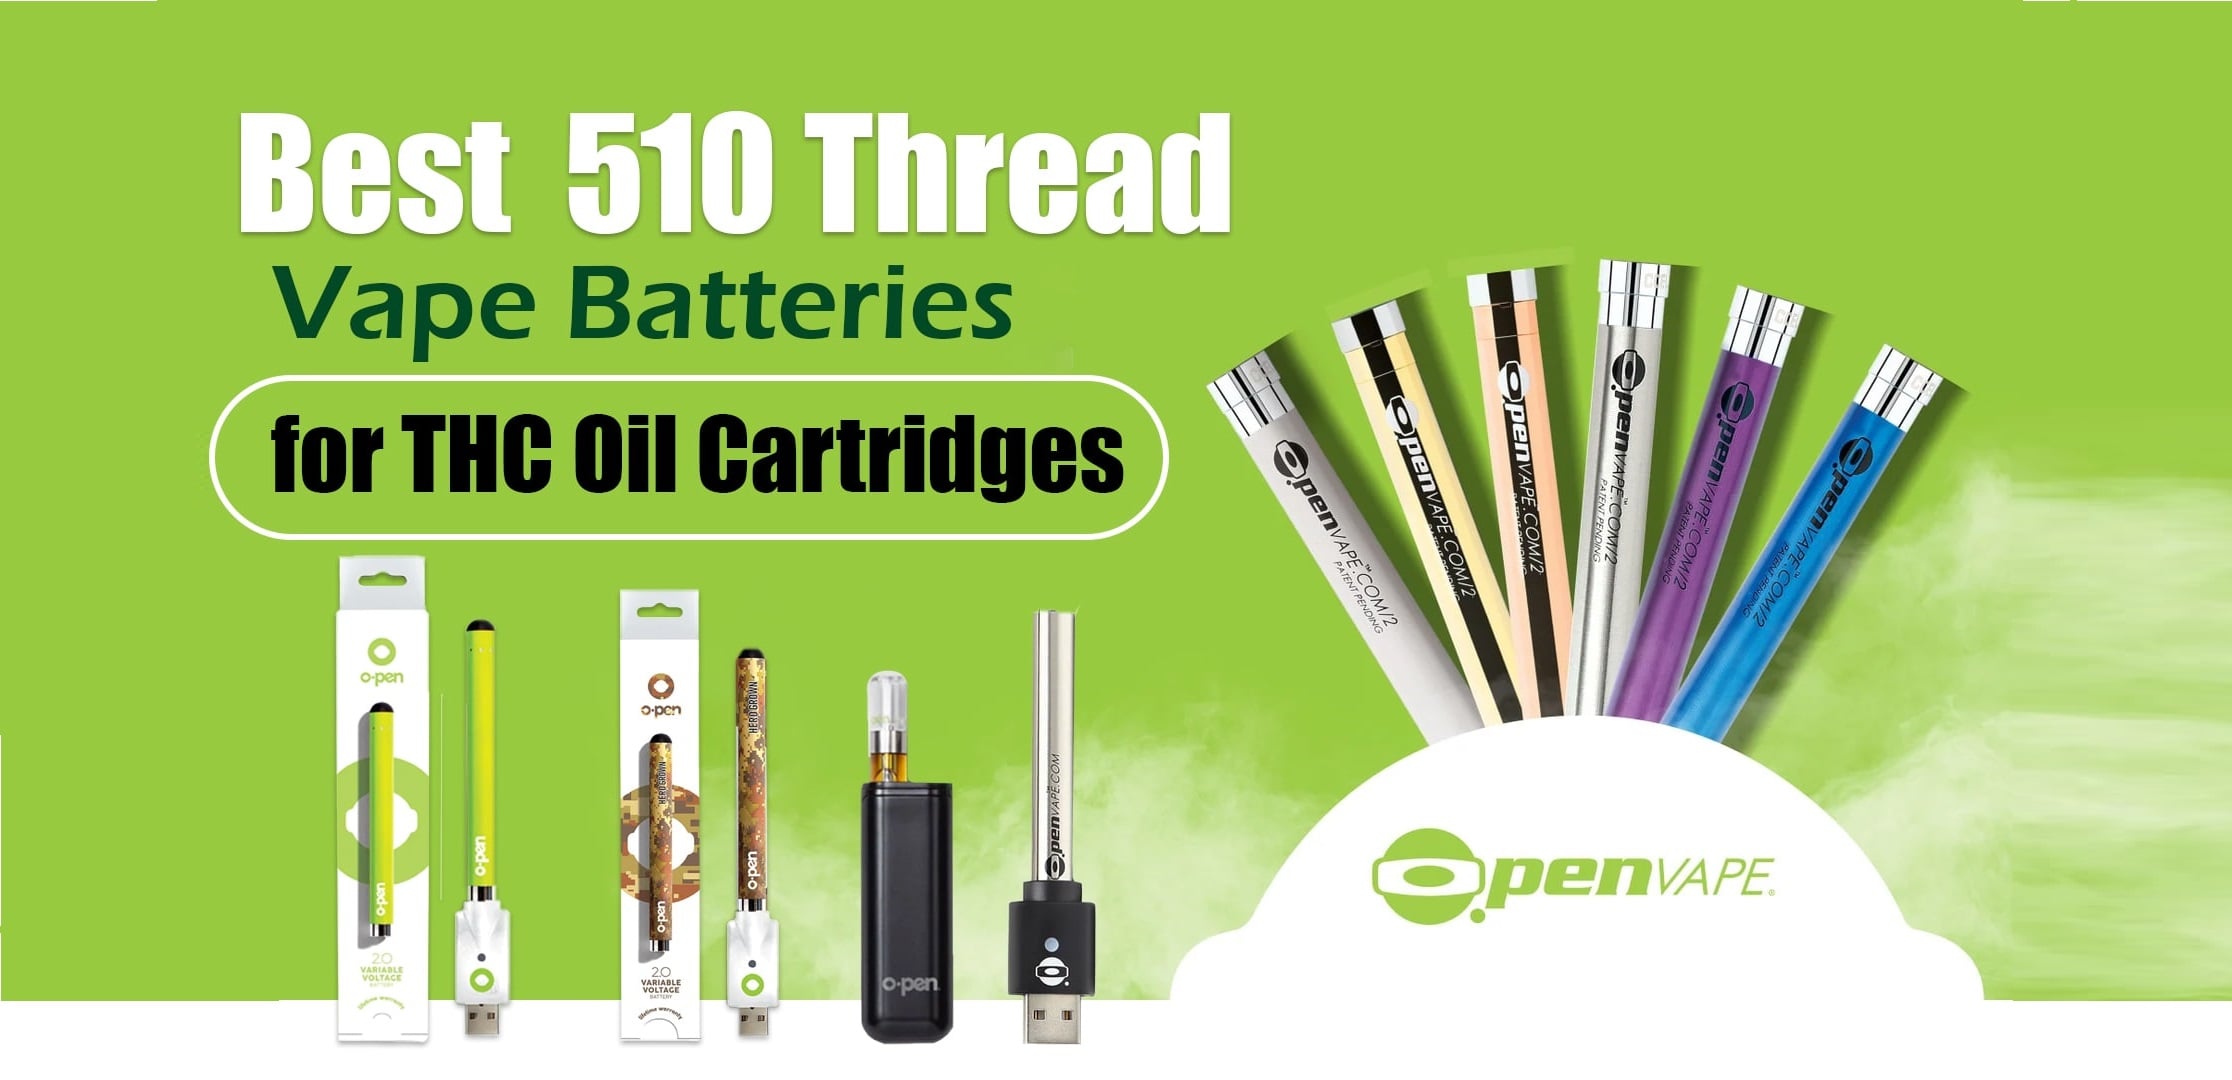 Best 510 Thread Vape Batteries for THC Oil Cartridges